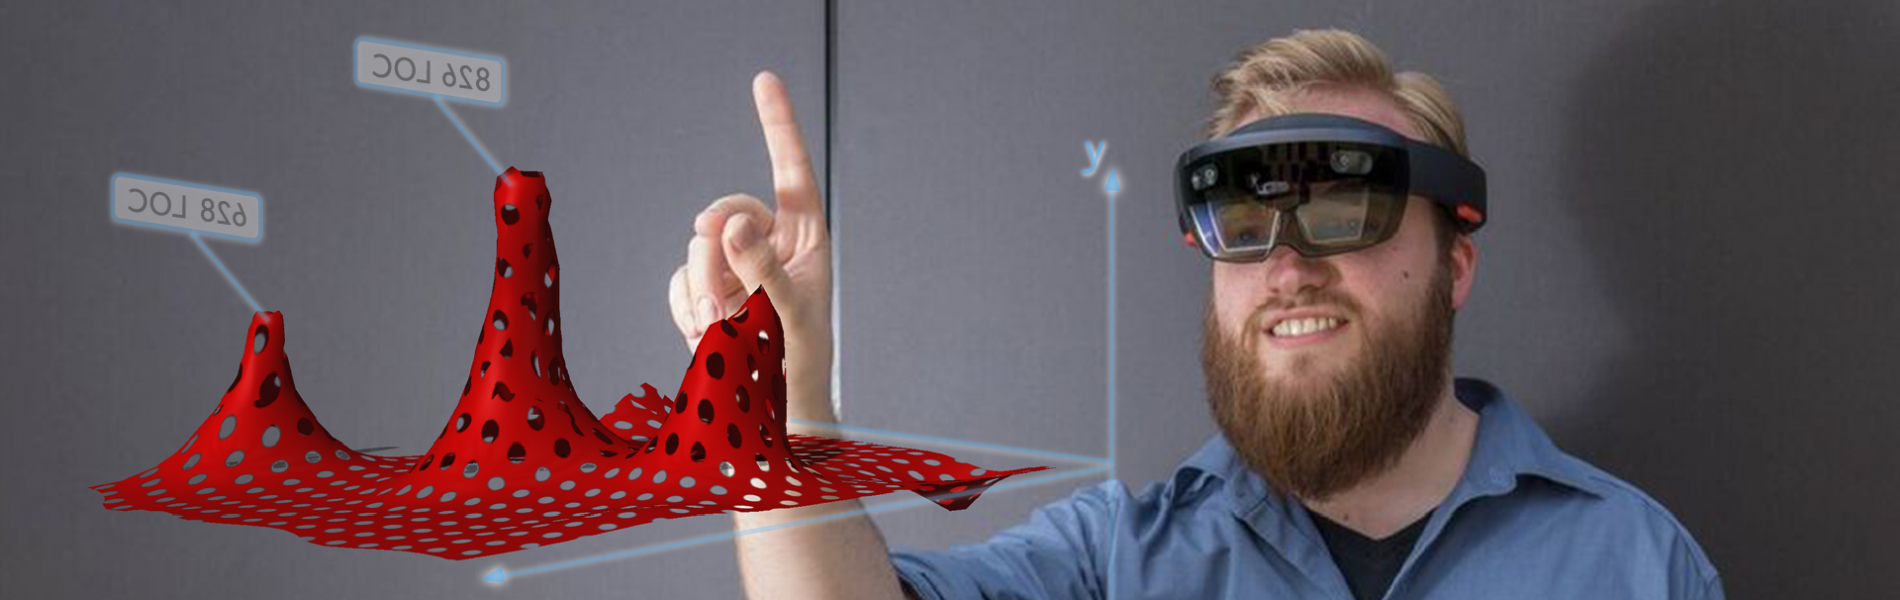 Ein Mann trägt eine VR Brille und zeigt mit dem Finger auf eine Grafik, die im Raum vor ihm erscheint.